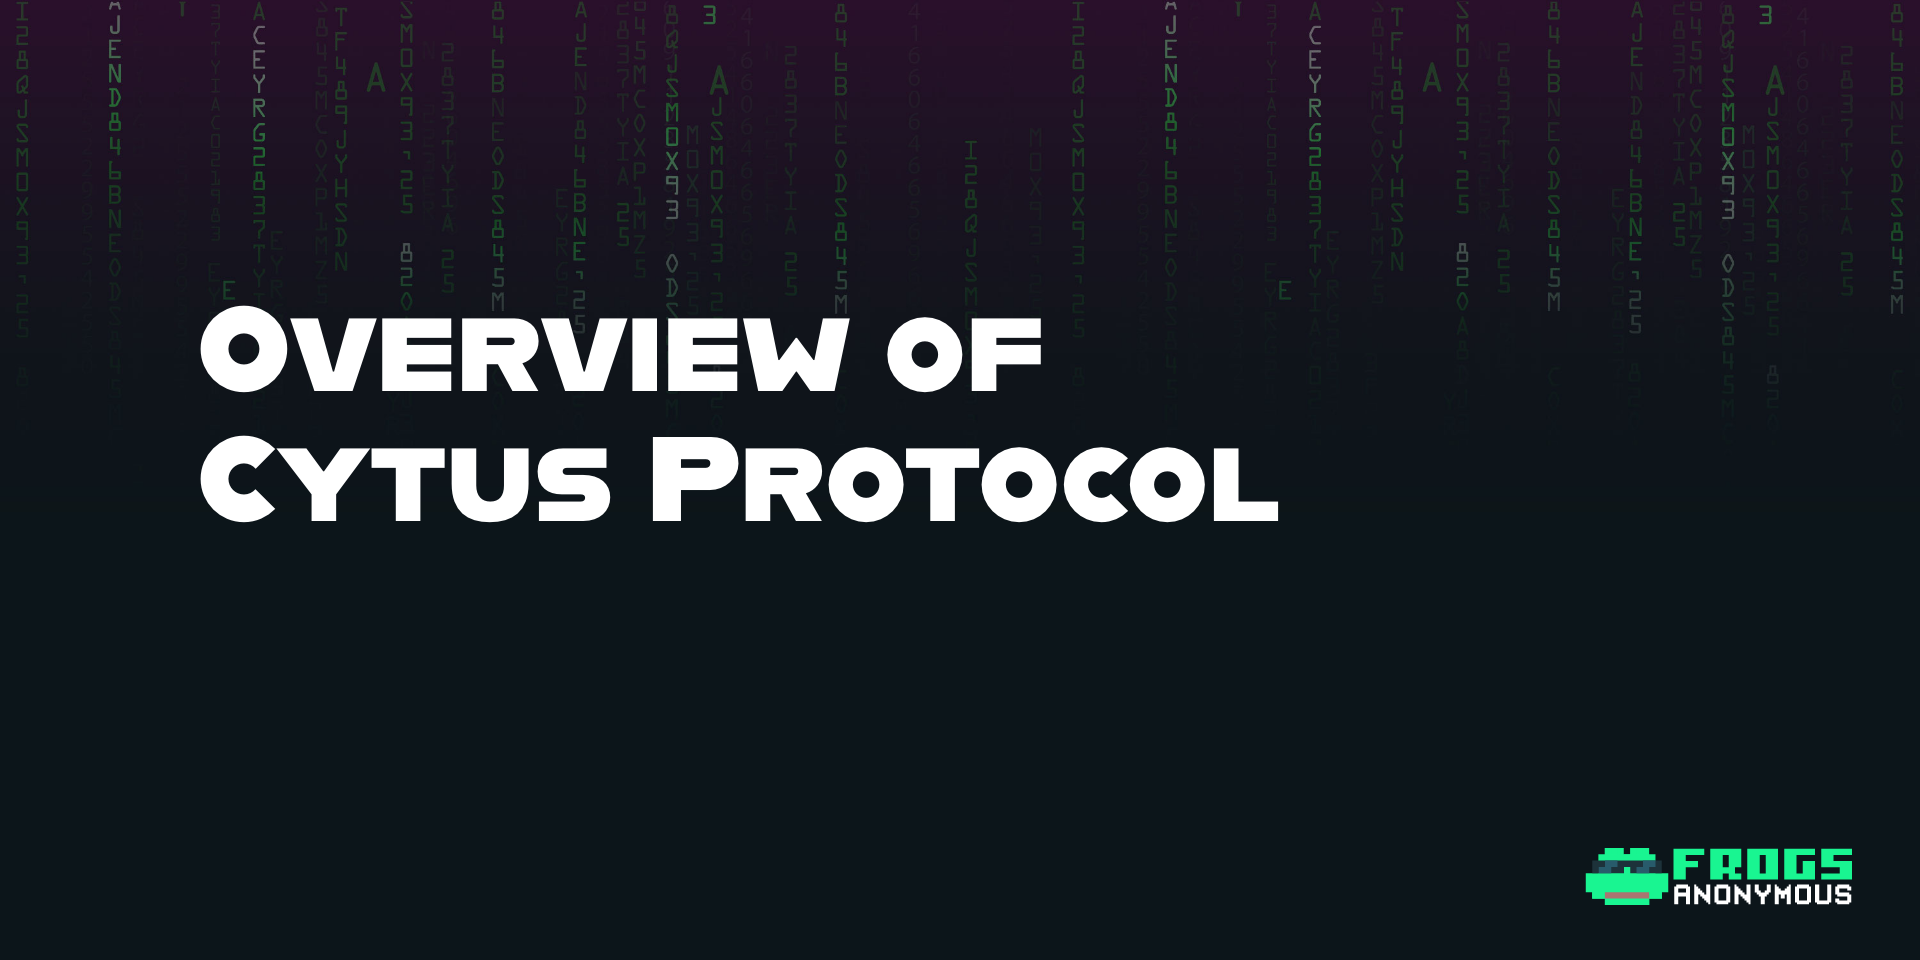 Cytus Protocol